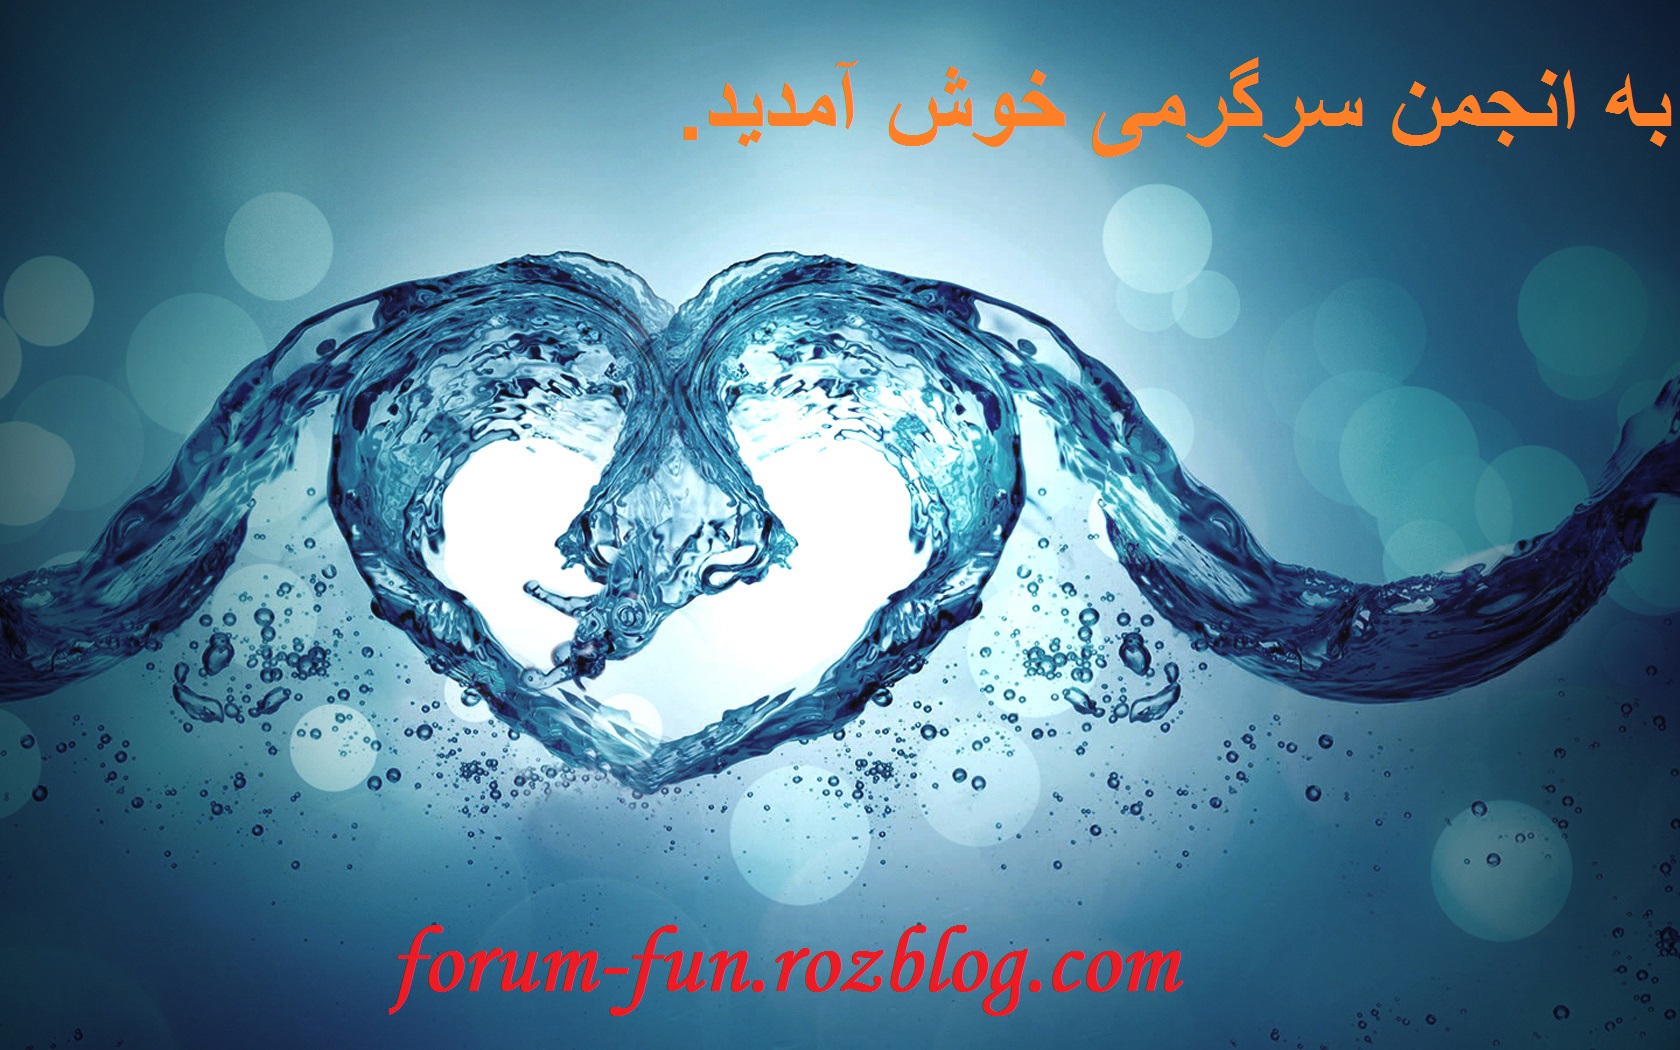 به انجمن سرگرمی ایران خوش آمدید